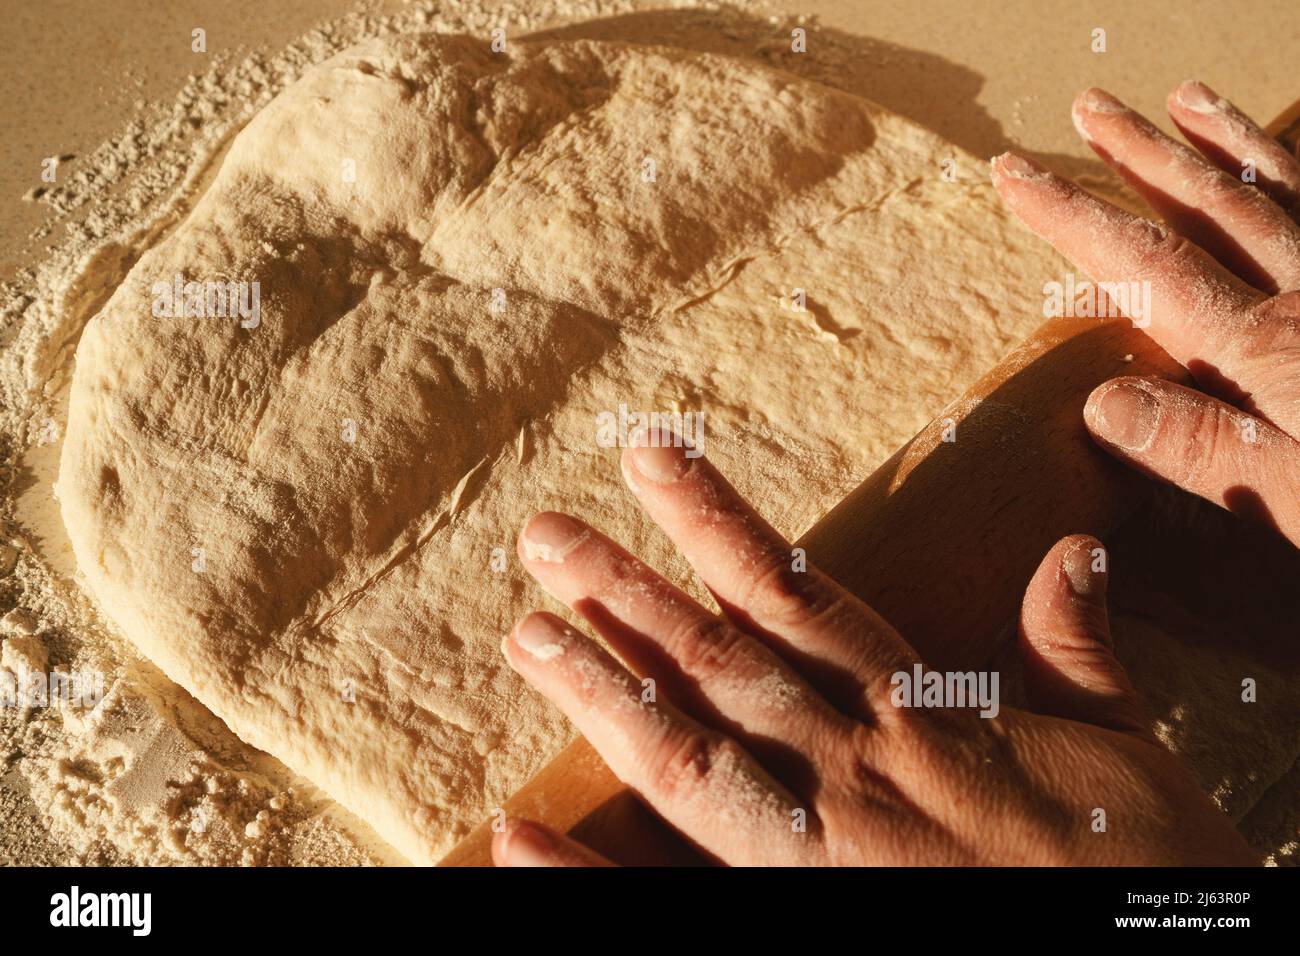 Preparare l'impasto per il pane, impastare l'impasto con un matterello sul tavolo. Foto Stock